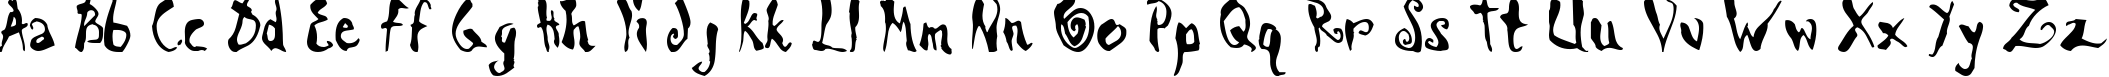 Пример написания английского алфавита шрифтом ScrawnCyr-Normal